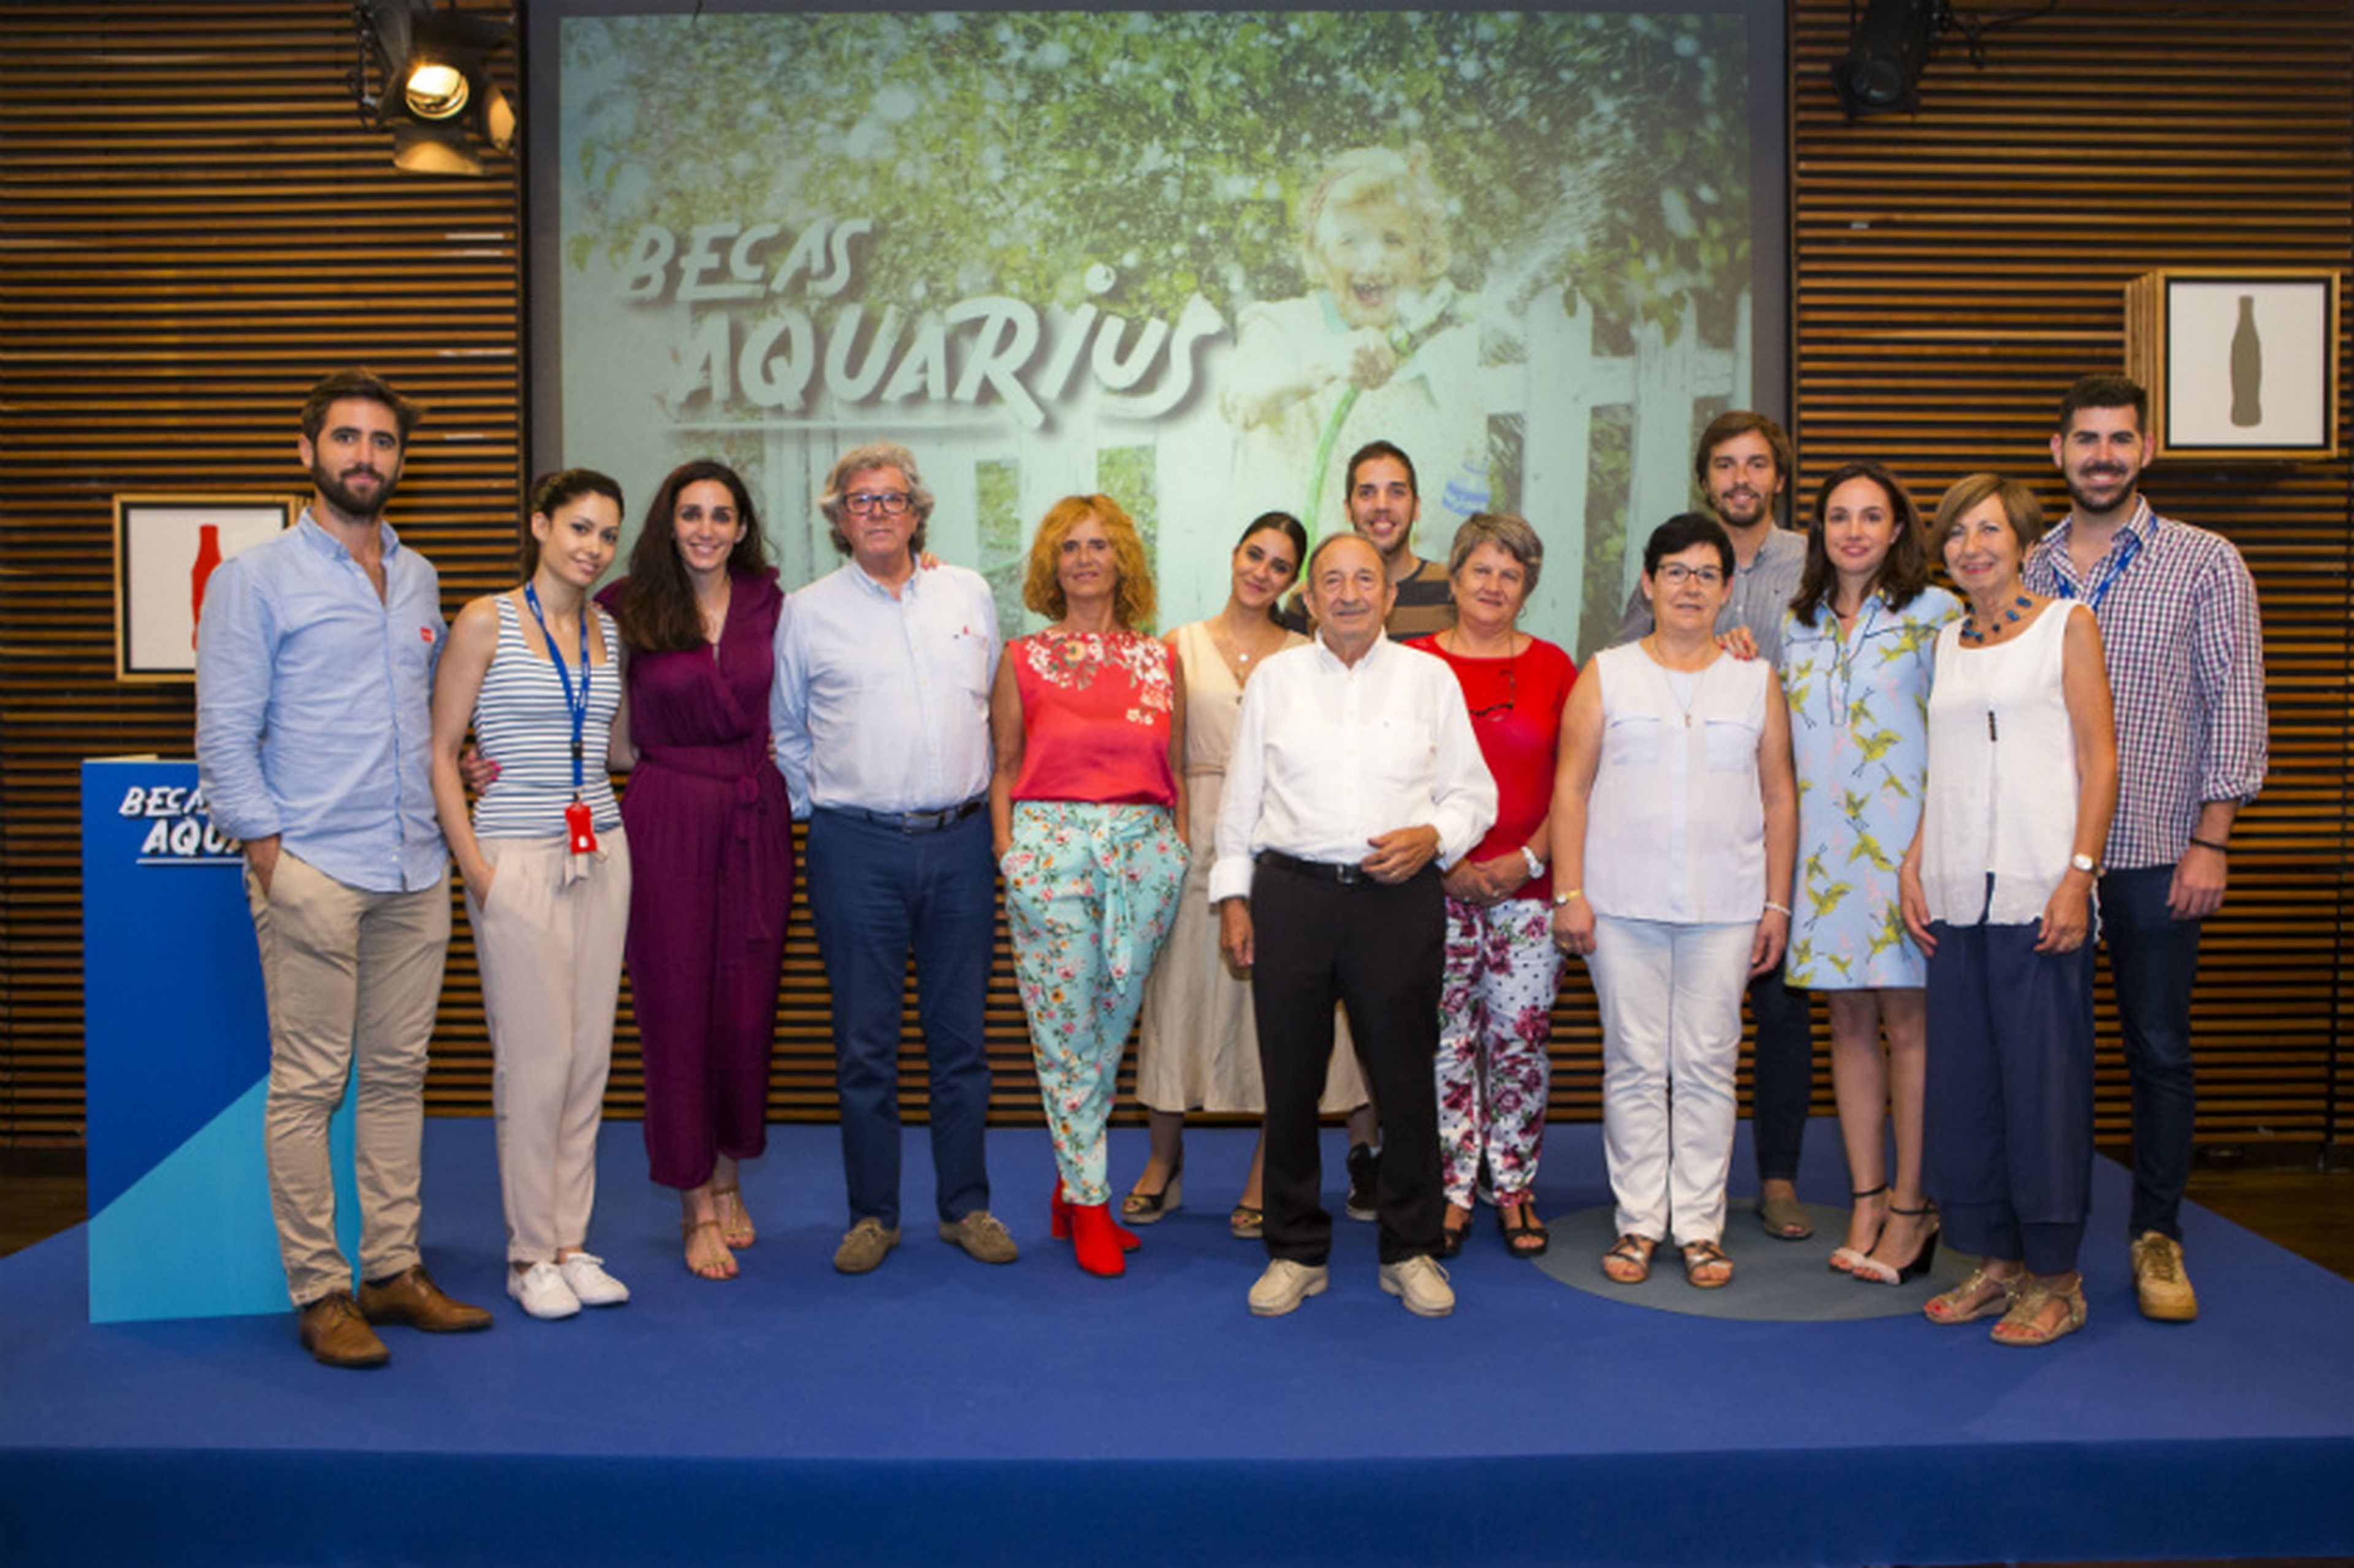 Finalistas y mentores de las Becas Aquarius, destinadas a promocionar proyectos de emprendimiento social para mayores de 60 años.